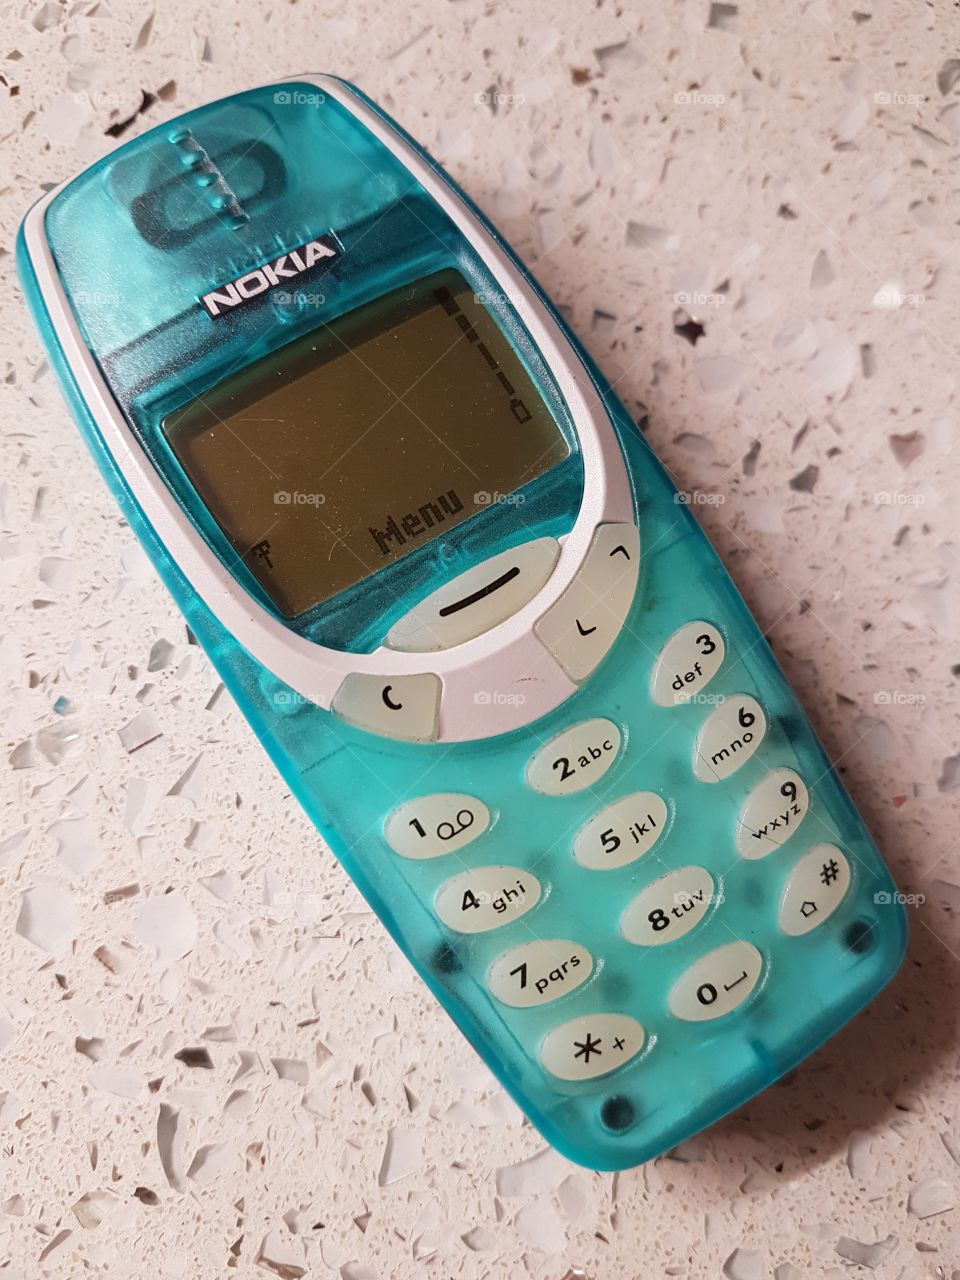 Nokia 3310 vintage